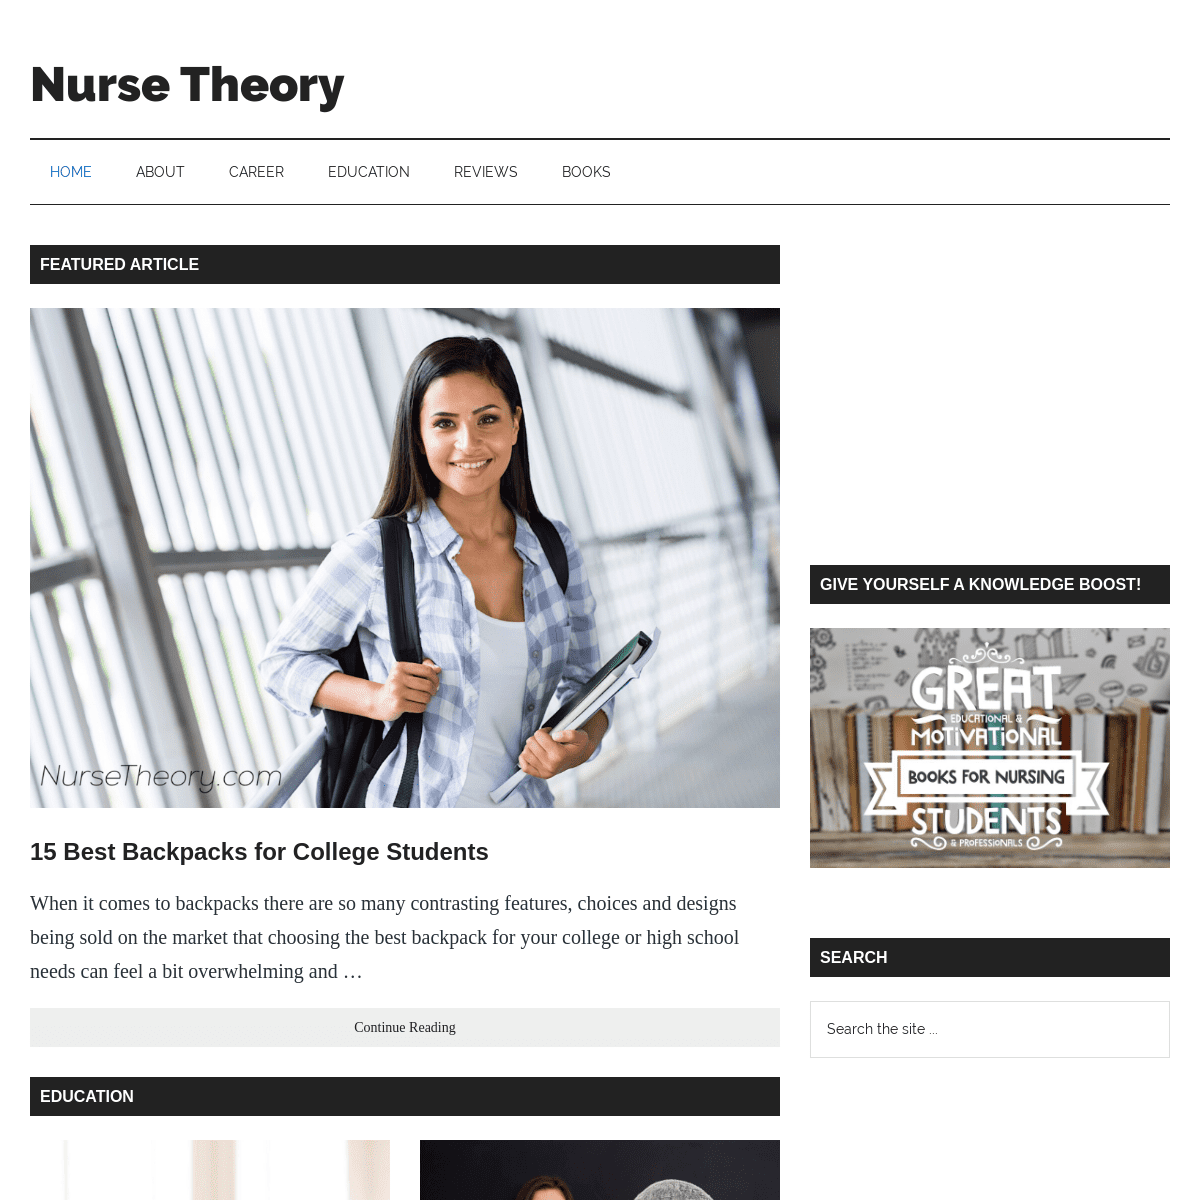 A complete backup of nursetheory.com